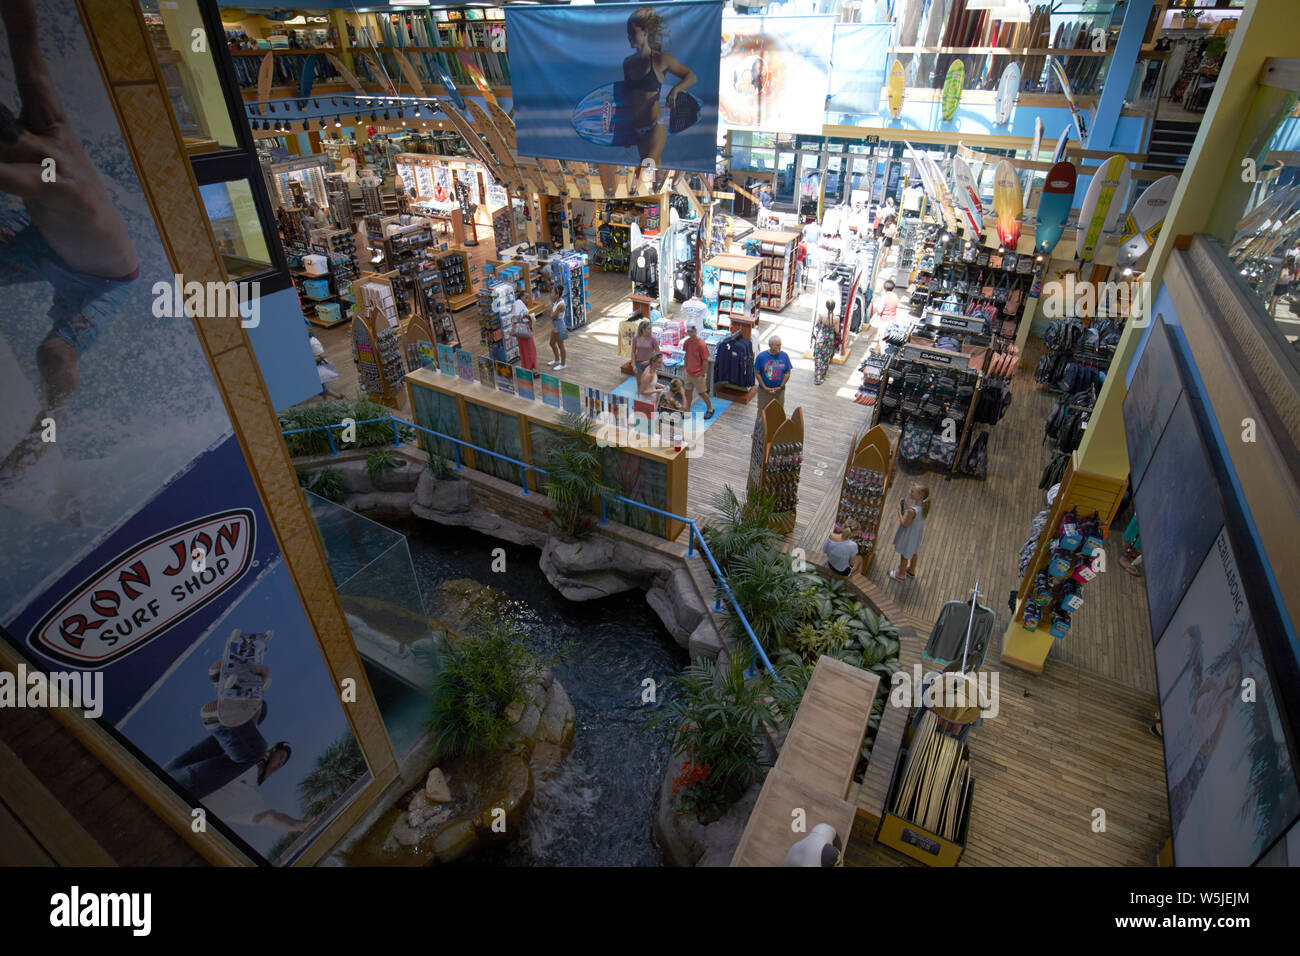 Im Inneren Ron Jon Surf Shop Cocoa Beach florida usa Vereinigte Staaten von Amerika Stockfoto